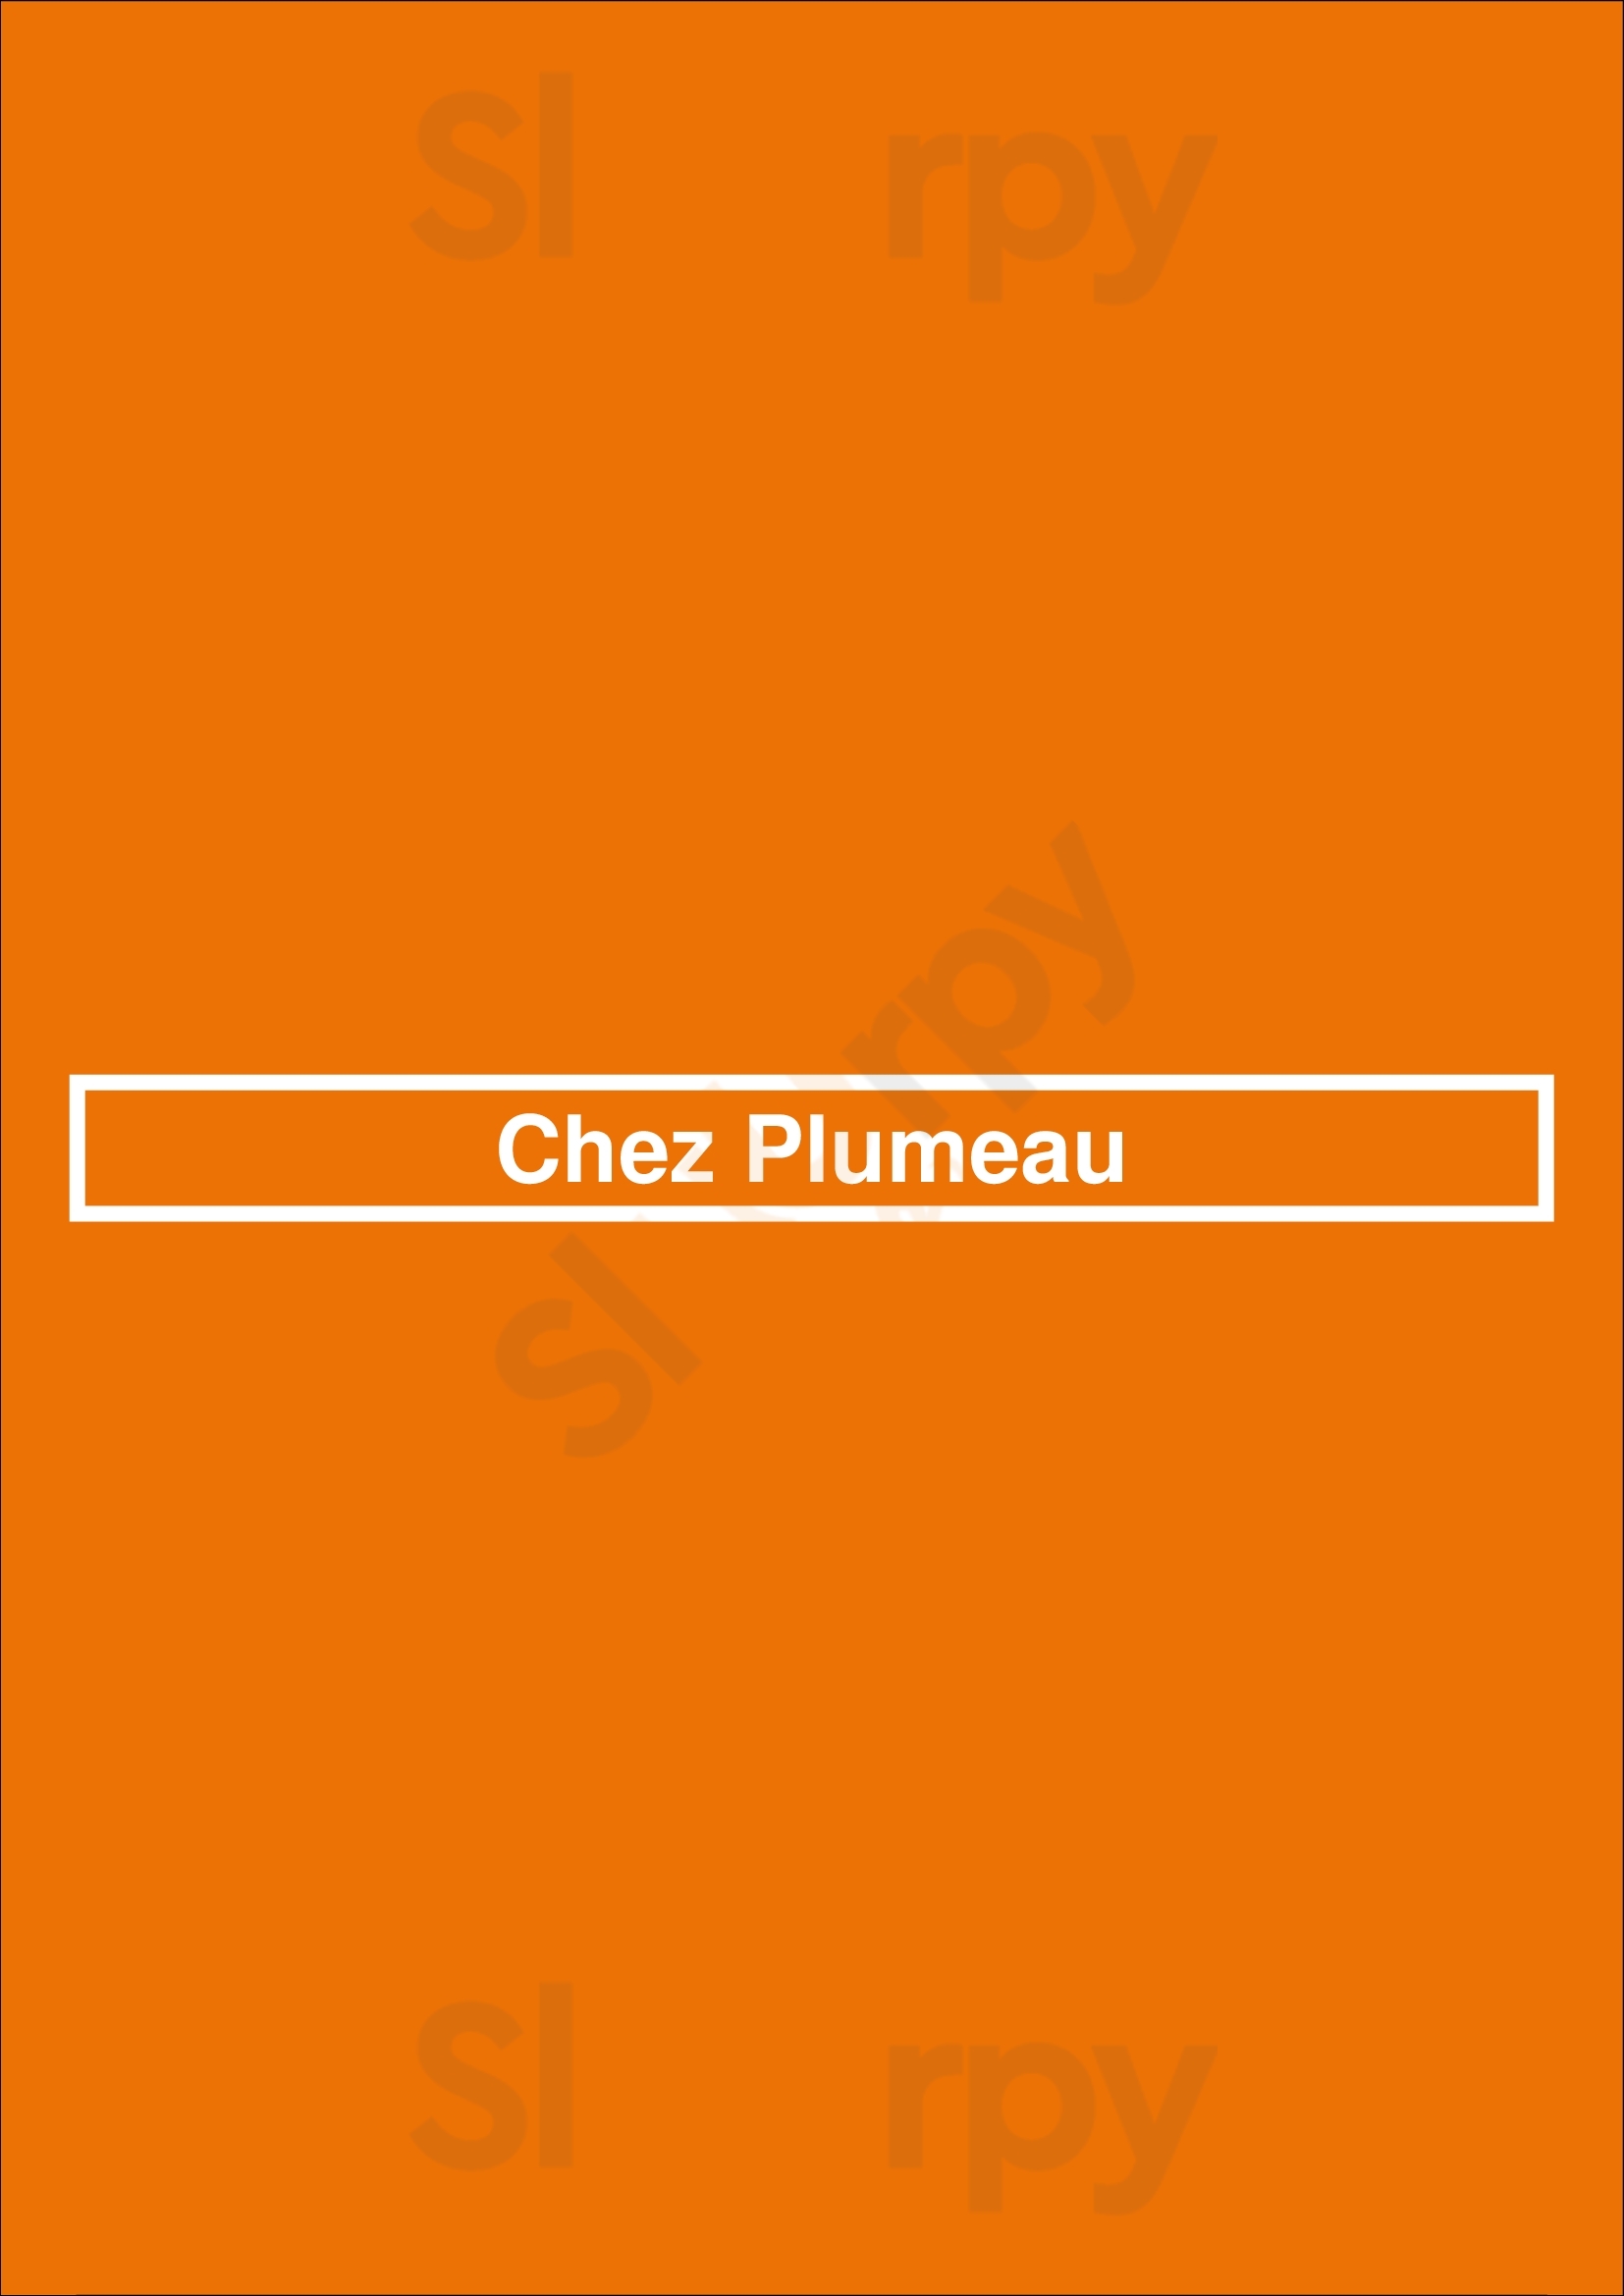 Chez Plumeau Paris Menu - 1